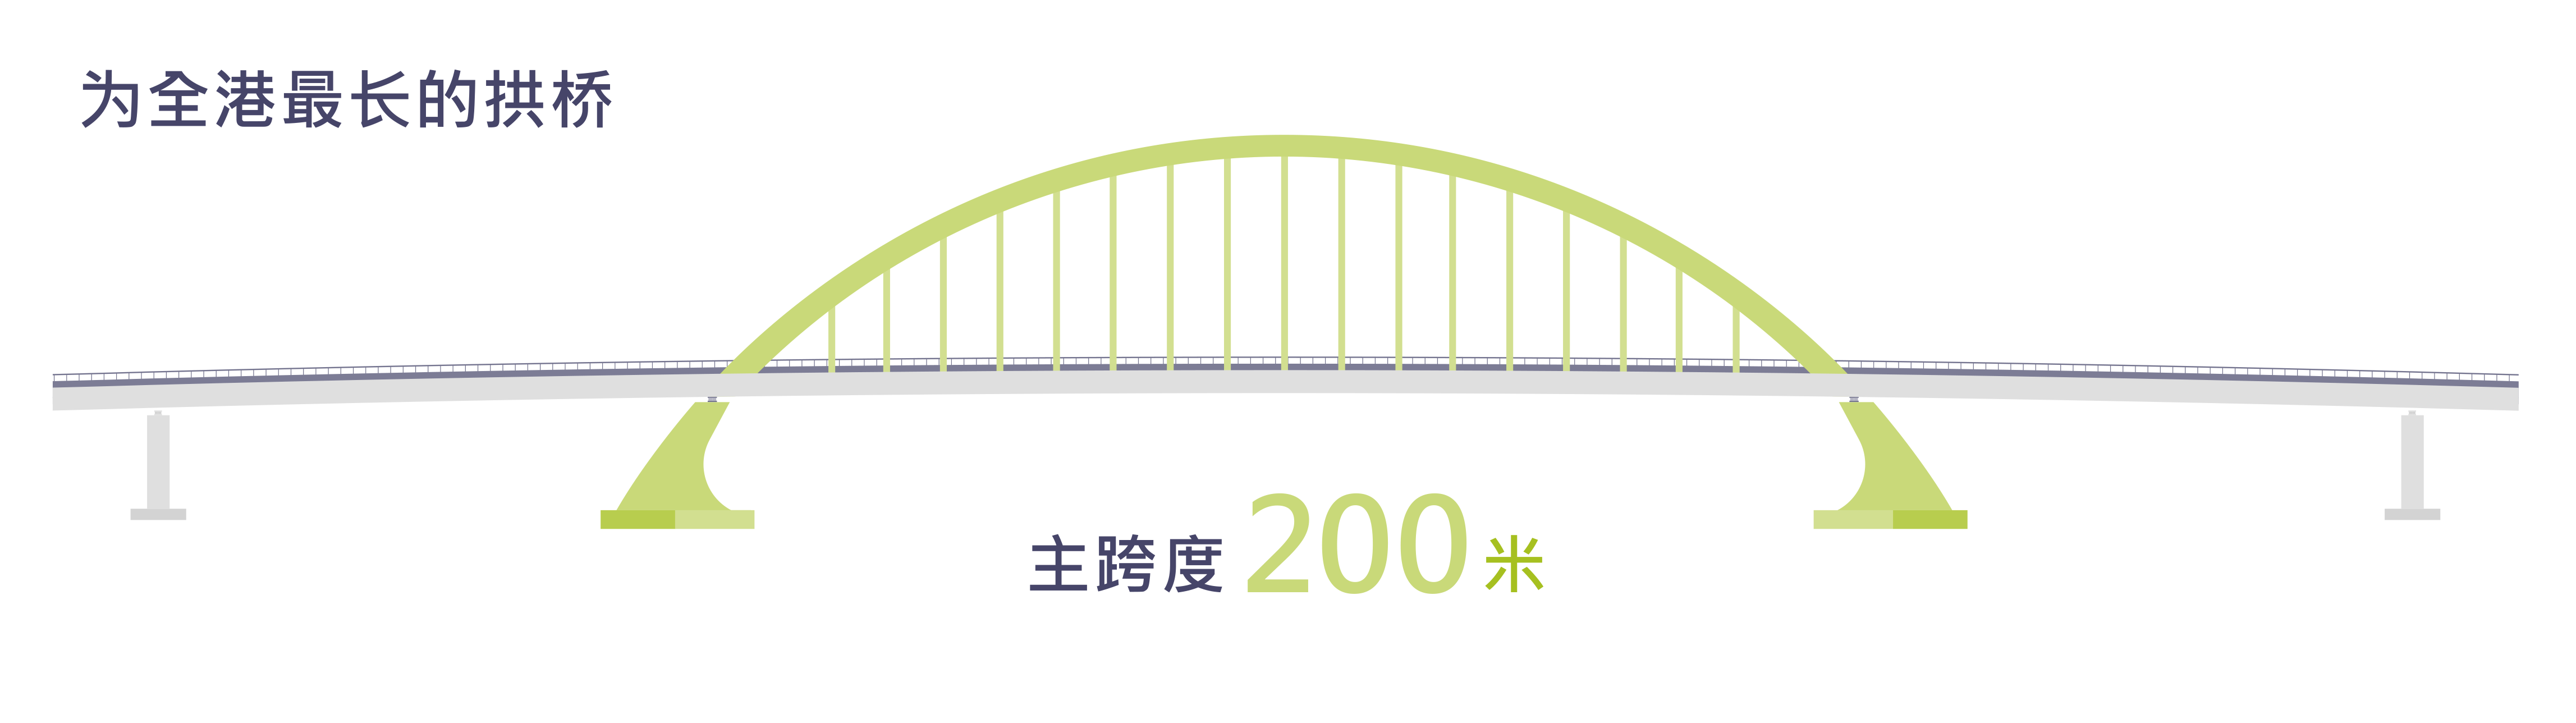 为全港最长的拱桥，主跨度200米